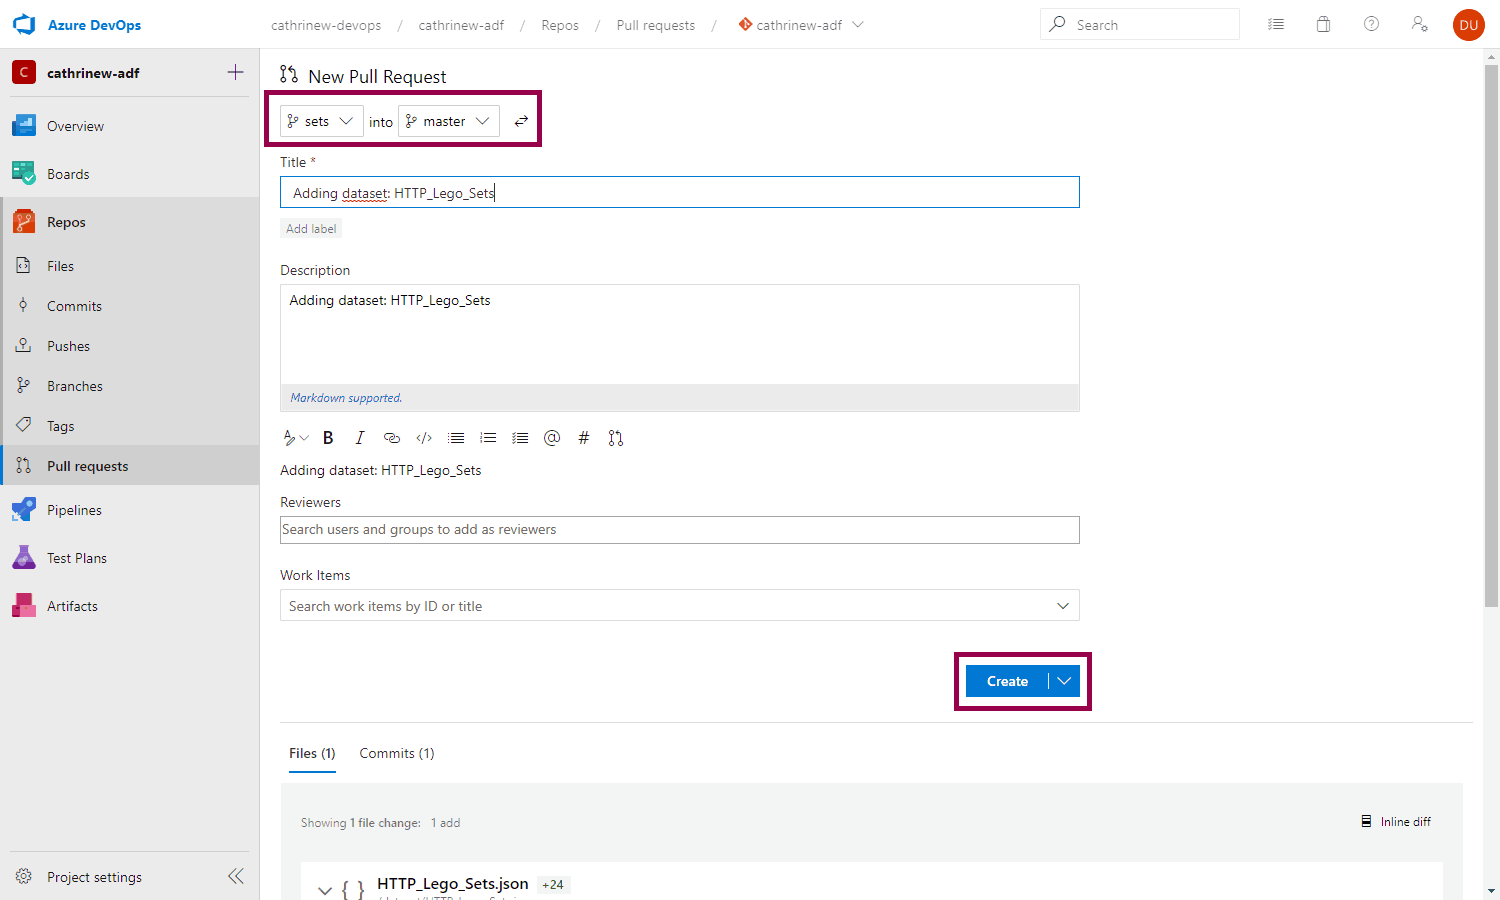 Screenshot of a pull request in Azure DevOps